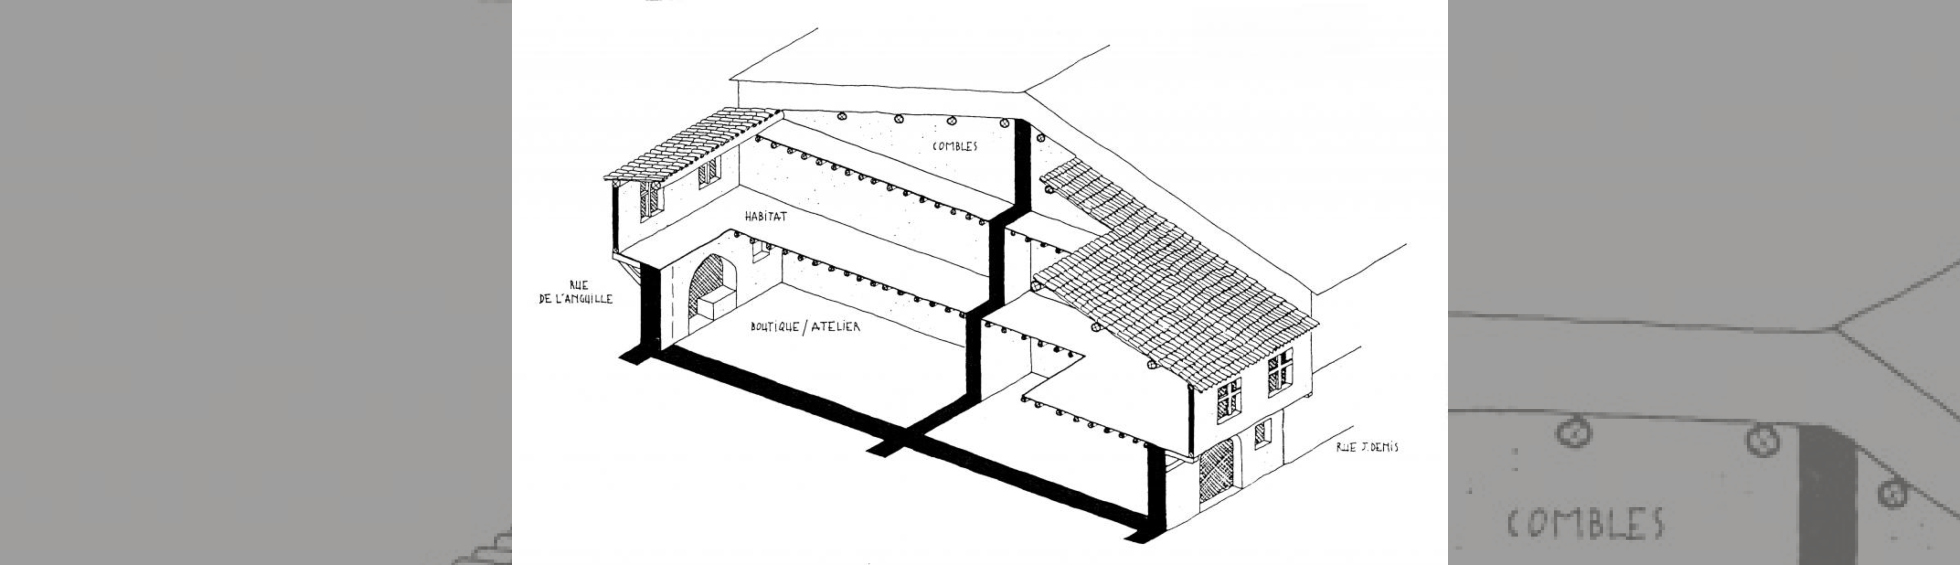 Vue en coupe d'une maison du 13 ième siècle avec la boutique/atelier au rez de chaussée et l'habitation à l'étage 